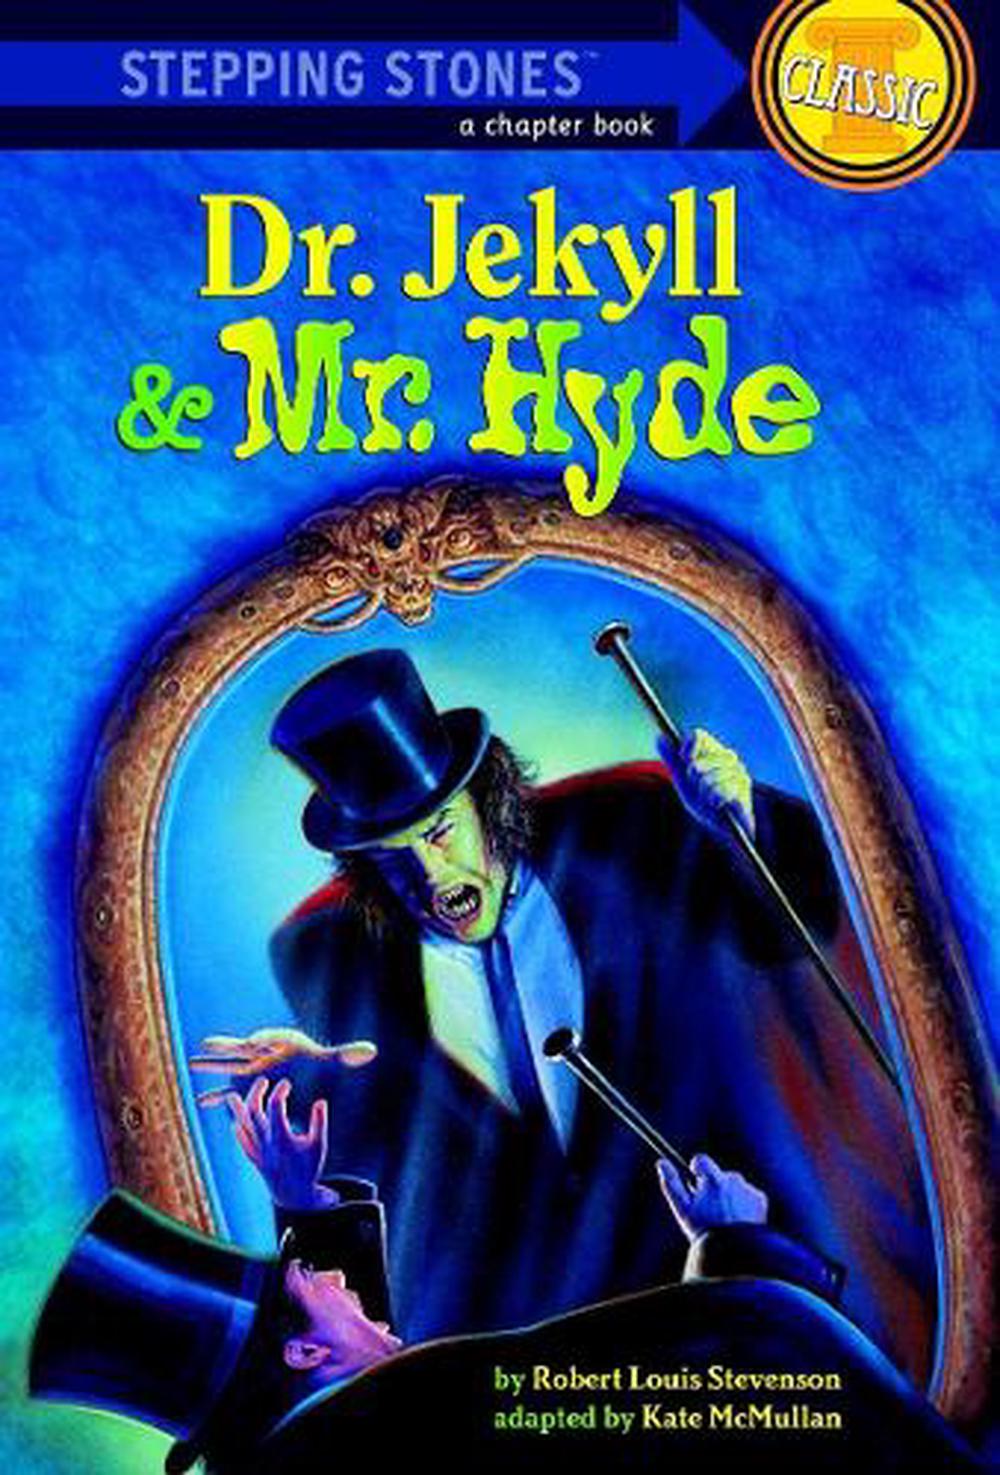 robert louis stevenson books dr jekyll and mr hyde